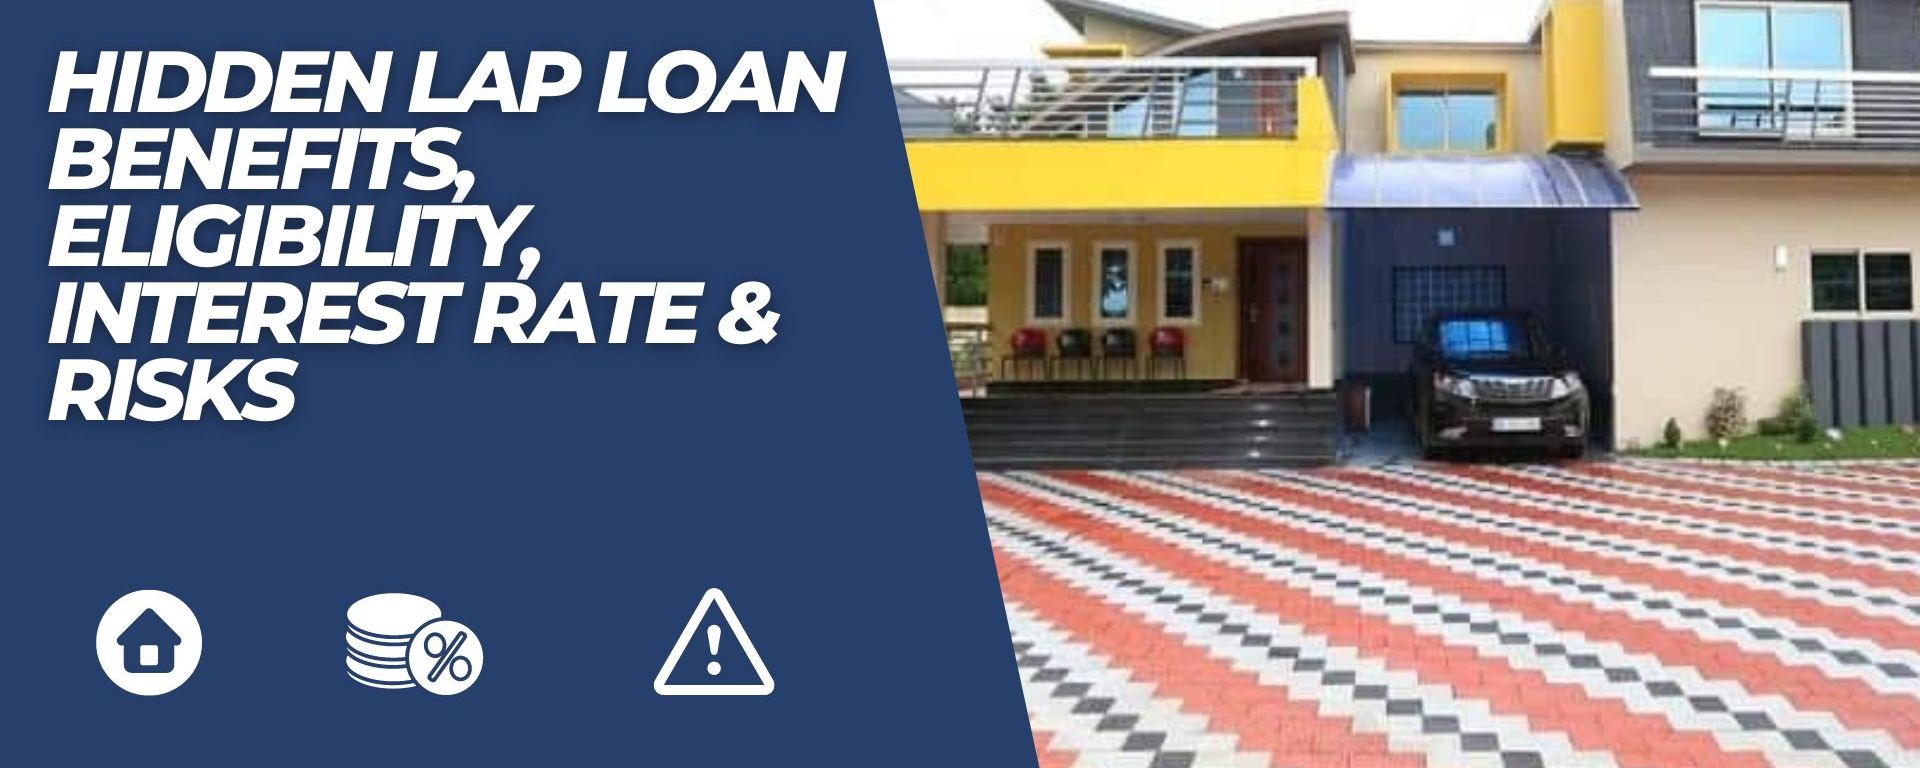 LAP loan interest rates